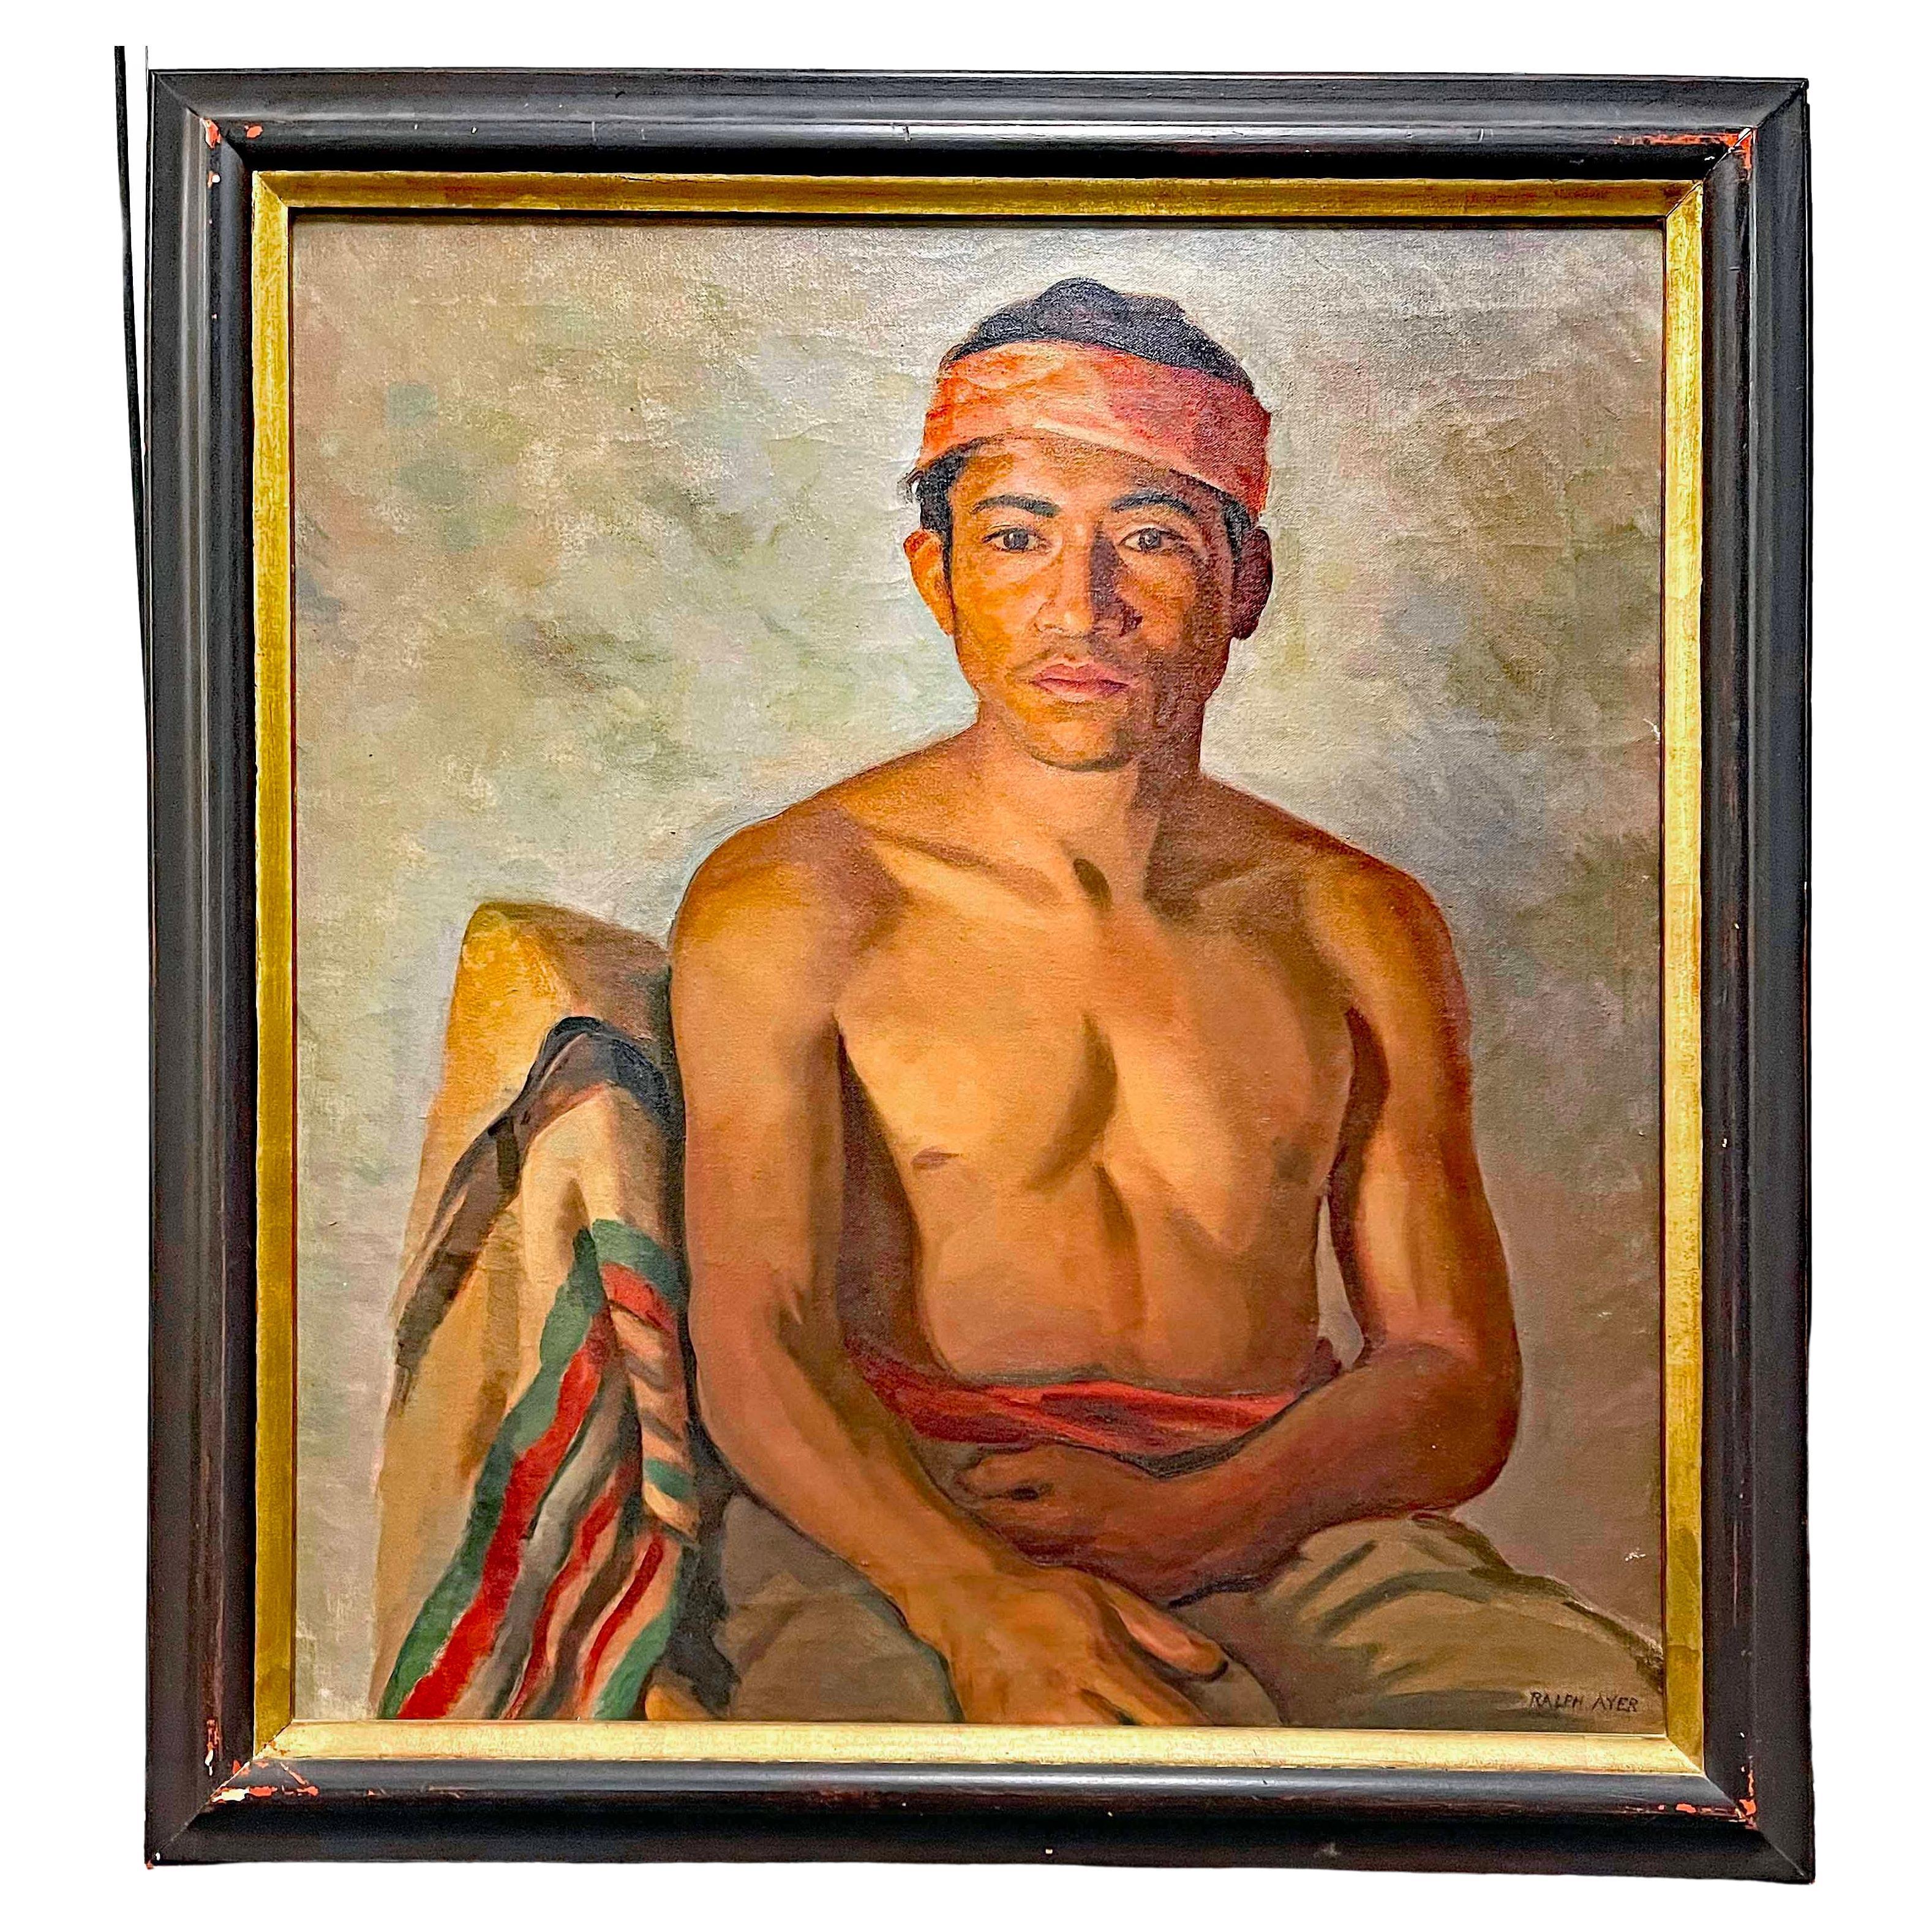 "Jeune homme à Taxco", portrait d'un jeune Mexicain torse nu, huile sur toile des années 1930.